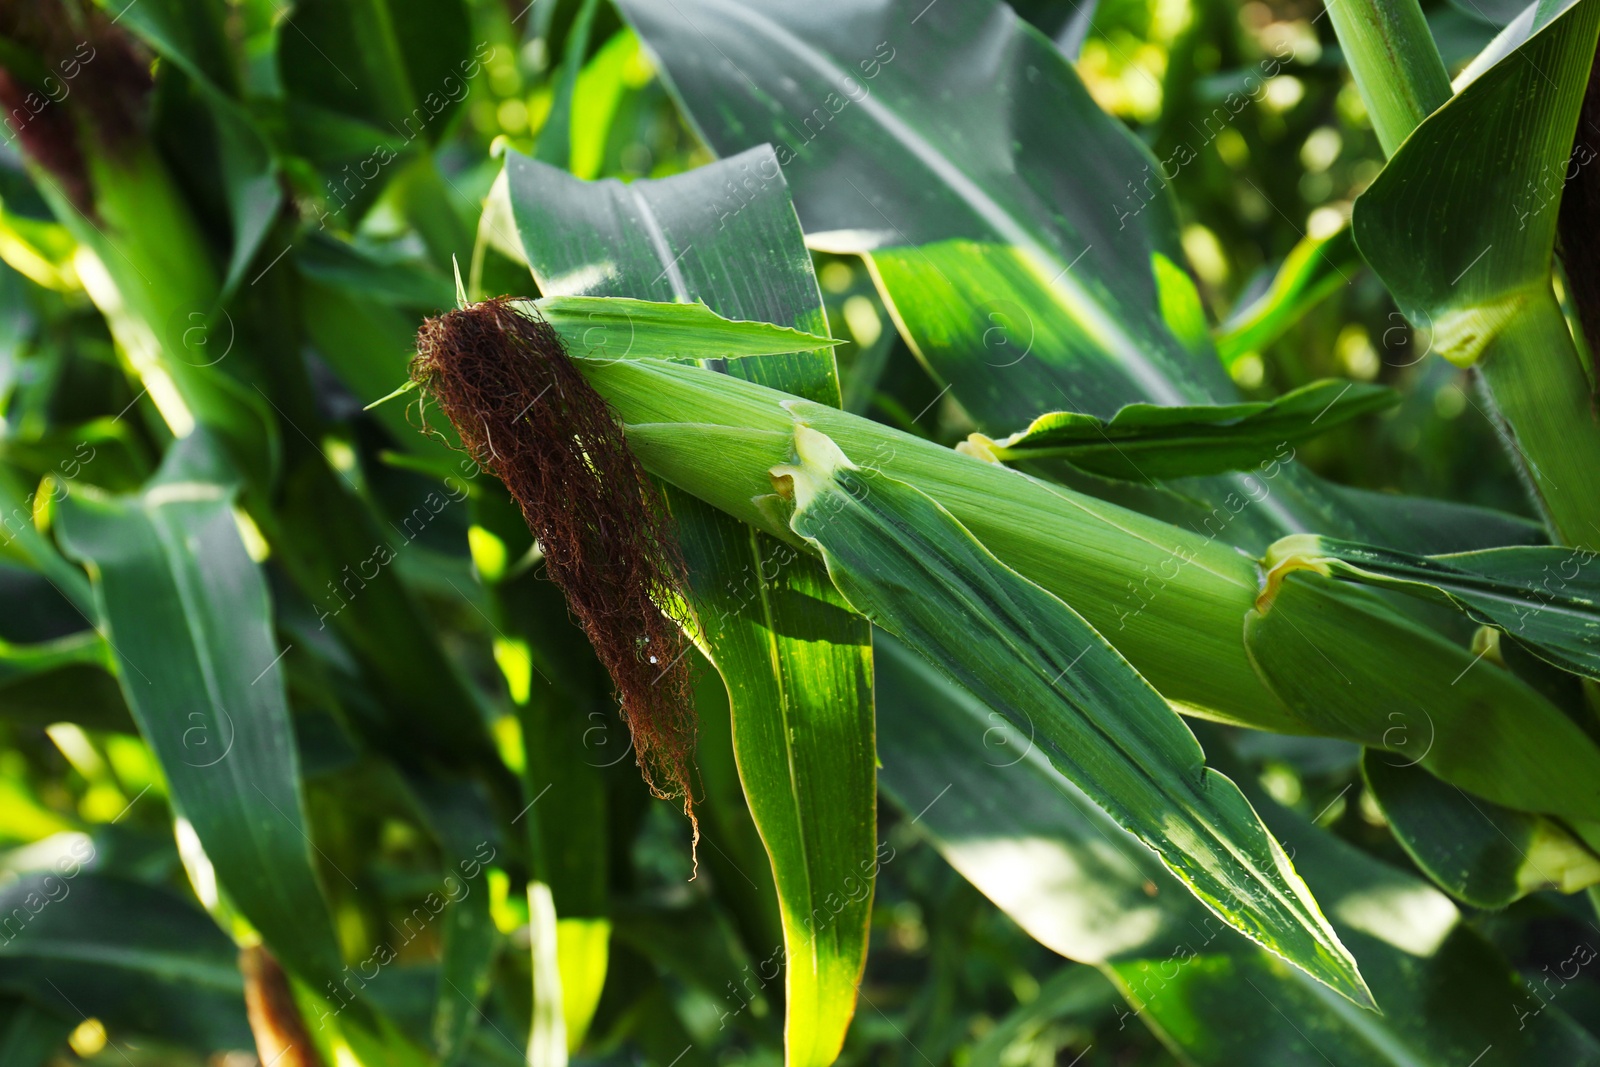 Photo of Ripe corn cob in field, closeup view